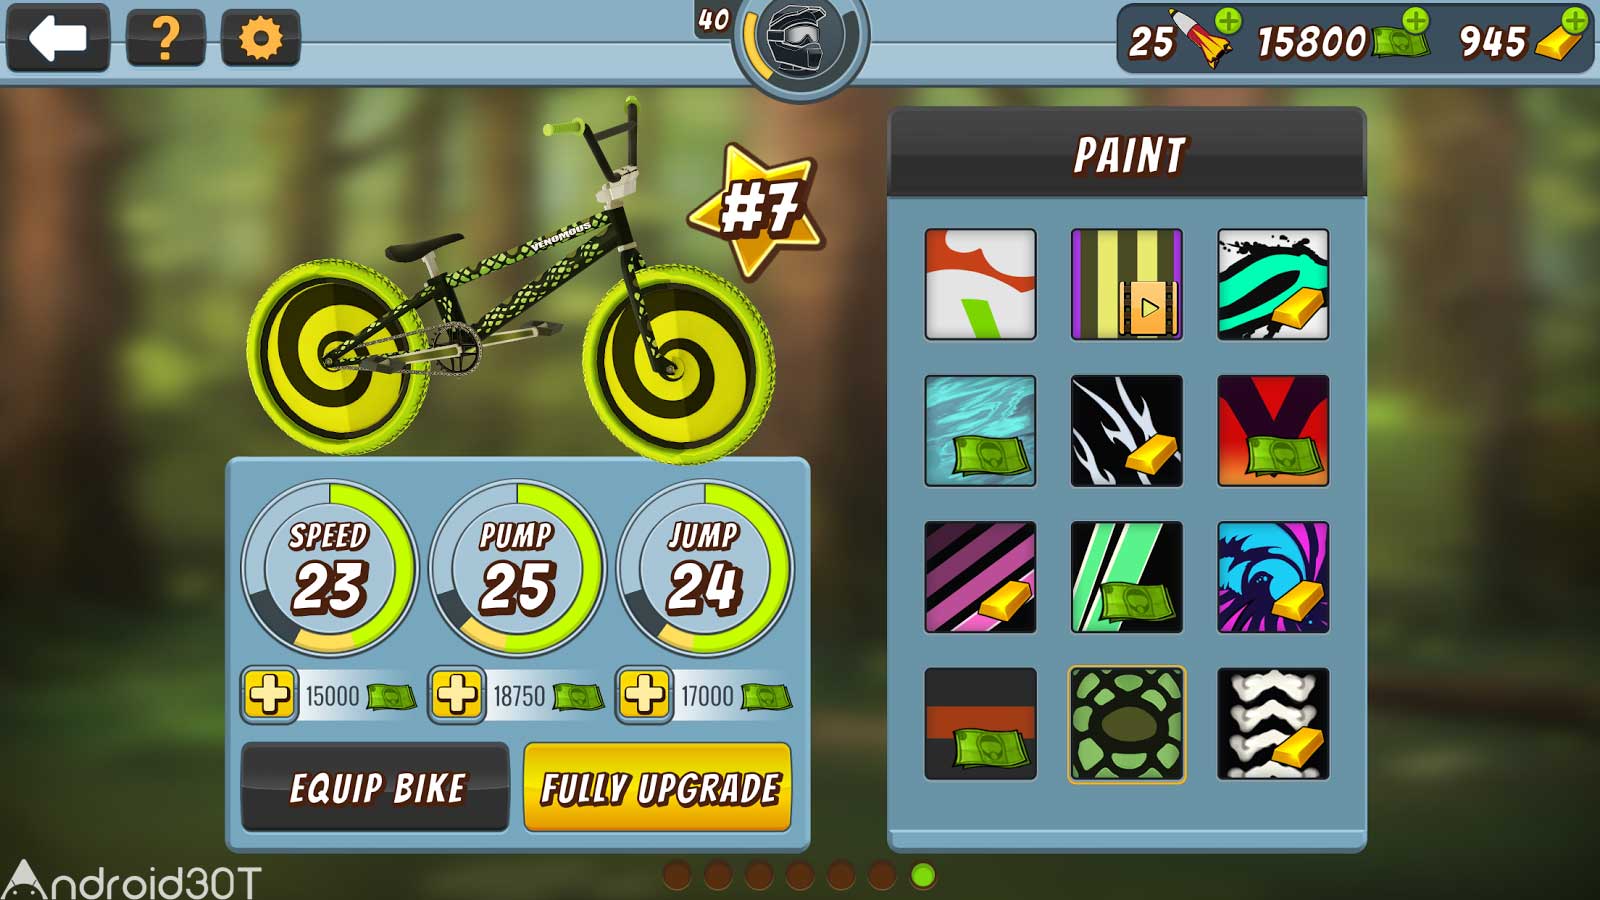 دانلود Mad Skills BMX 2 2.4.9 – بازی دوچرخه سواری بی ام ایکس 2 اندروید